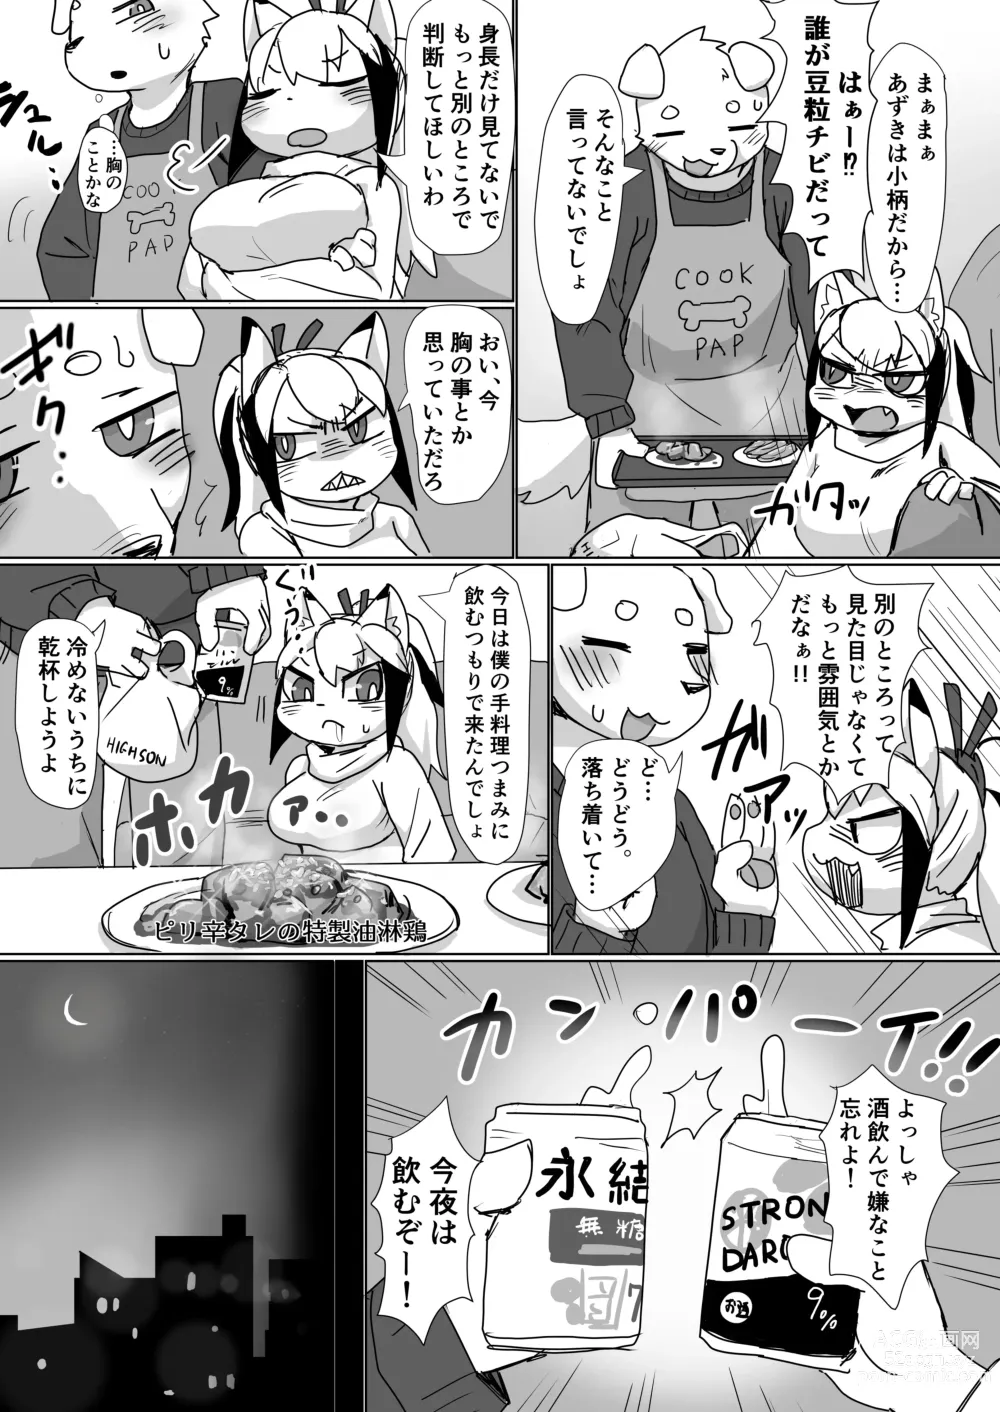 Page 4 of doujinshi Koyoi Itsumo no Nomi Tomo to